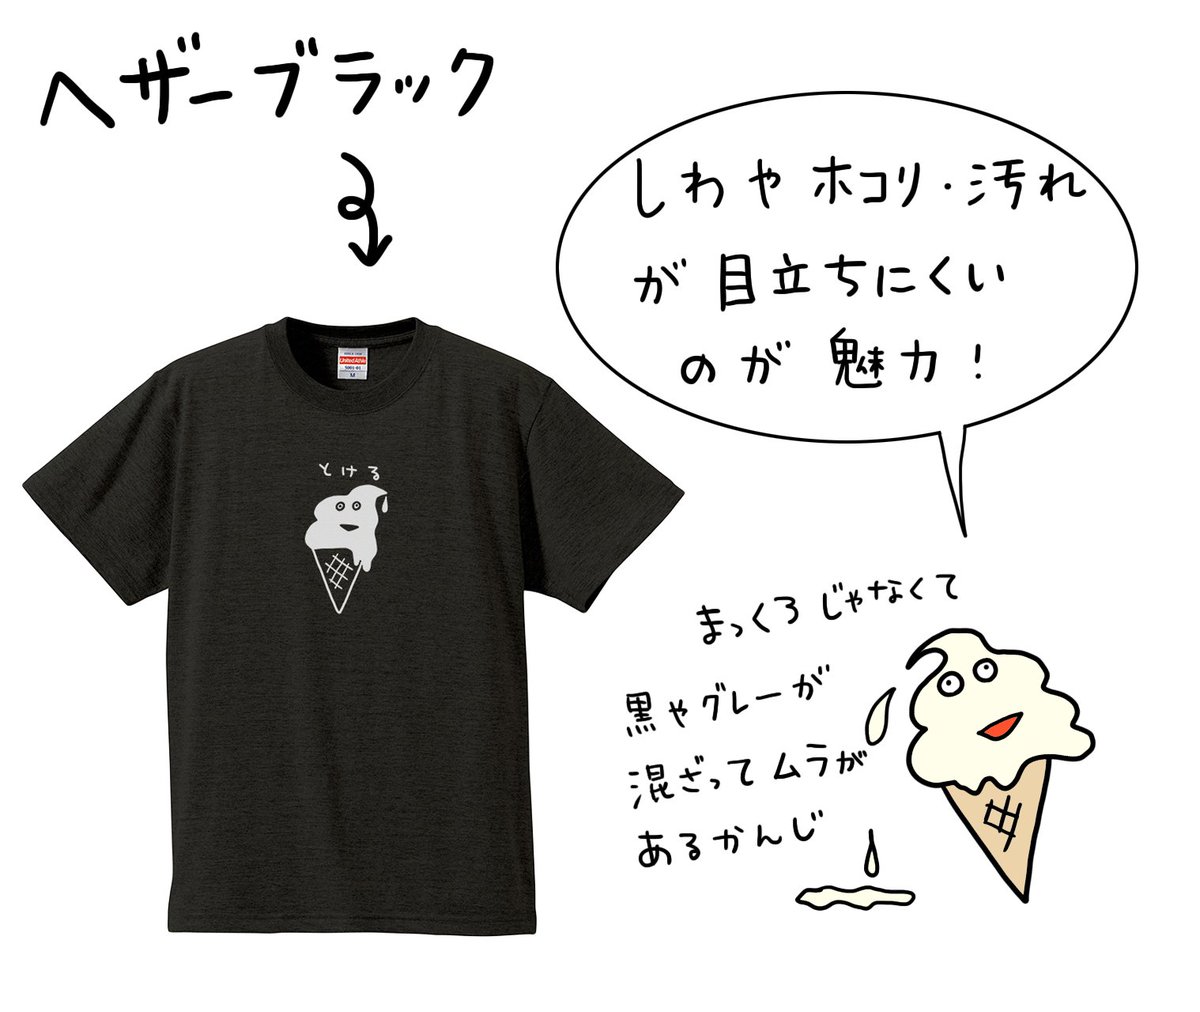 お待たせしました！
Tシャツ『とける』のブラックver.のデザインをアップデートし、サイトで販売を開始しました！
アイスの顔の部分が白になったよ♪

 